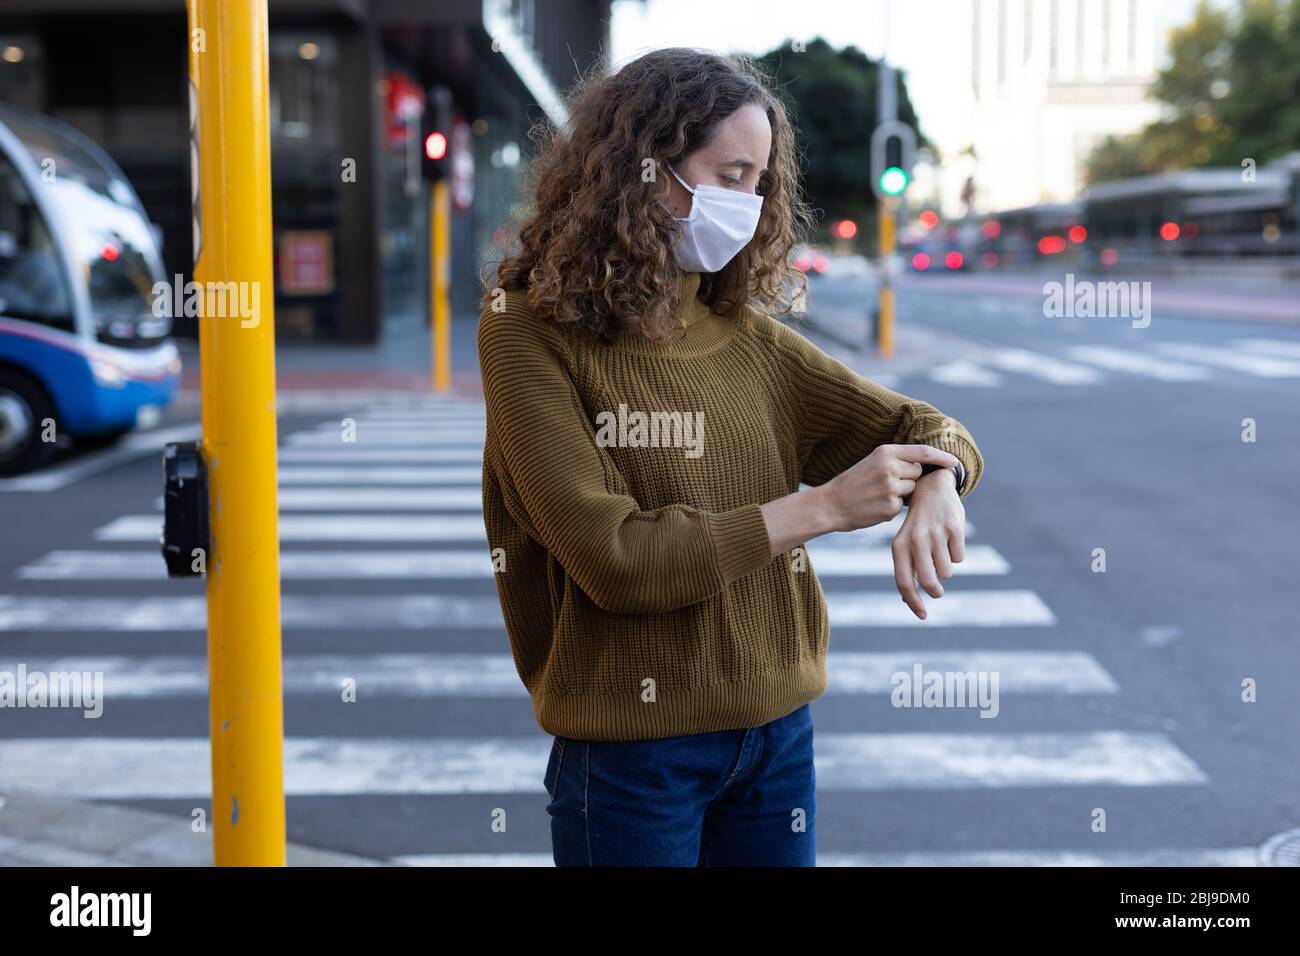 Femme caucasienne portant un masque de protection dans la rue Banque D'Images